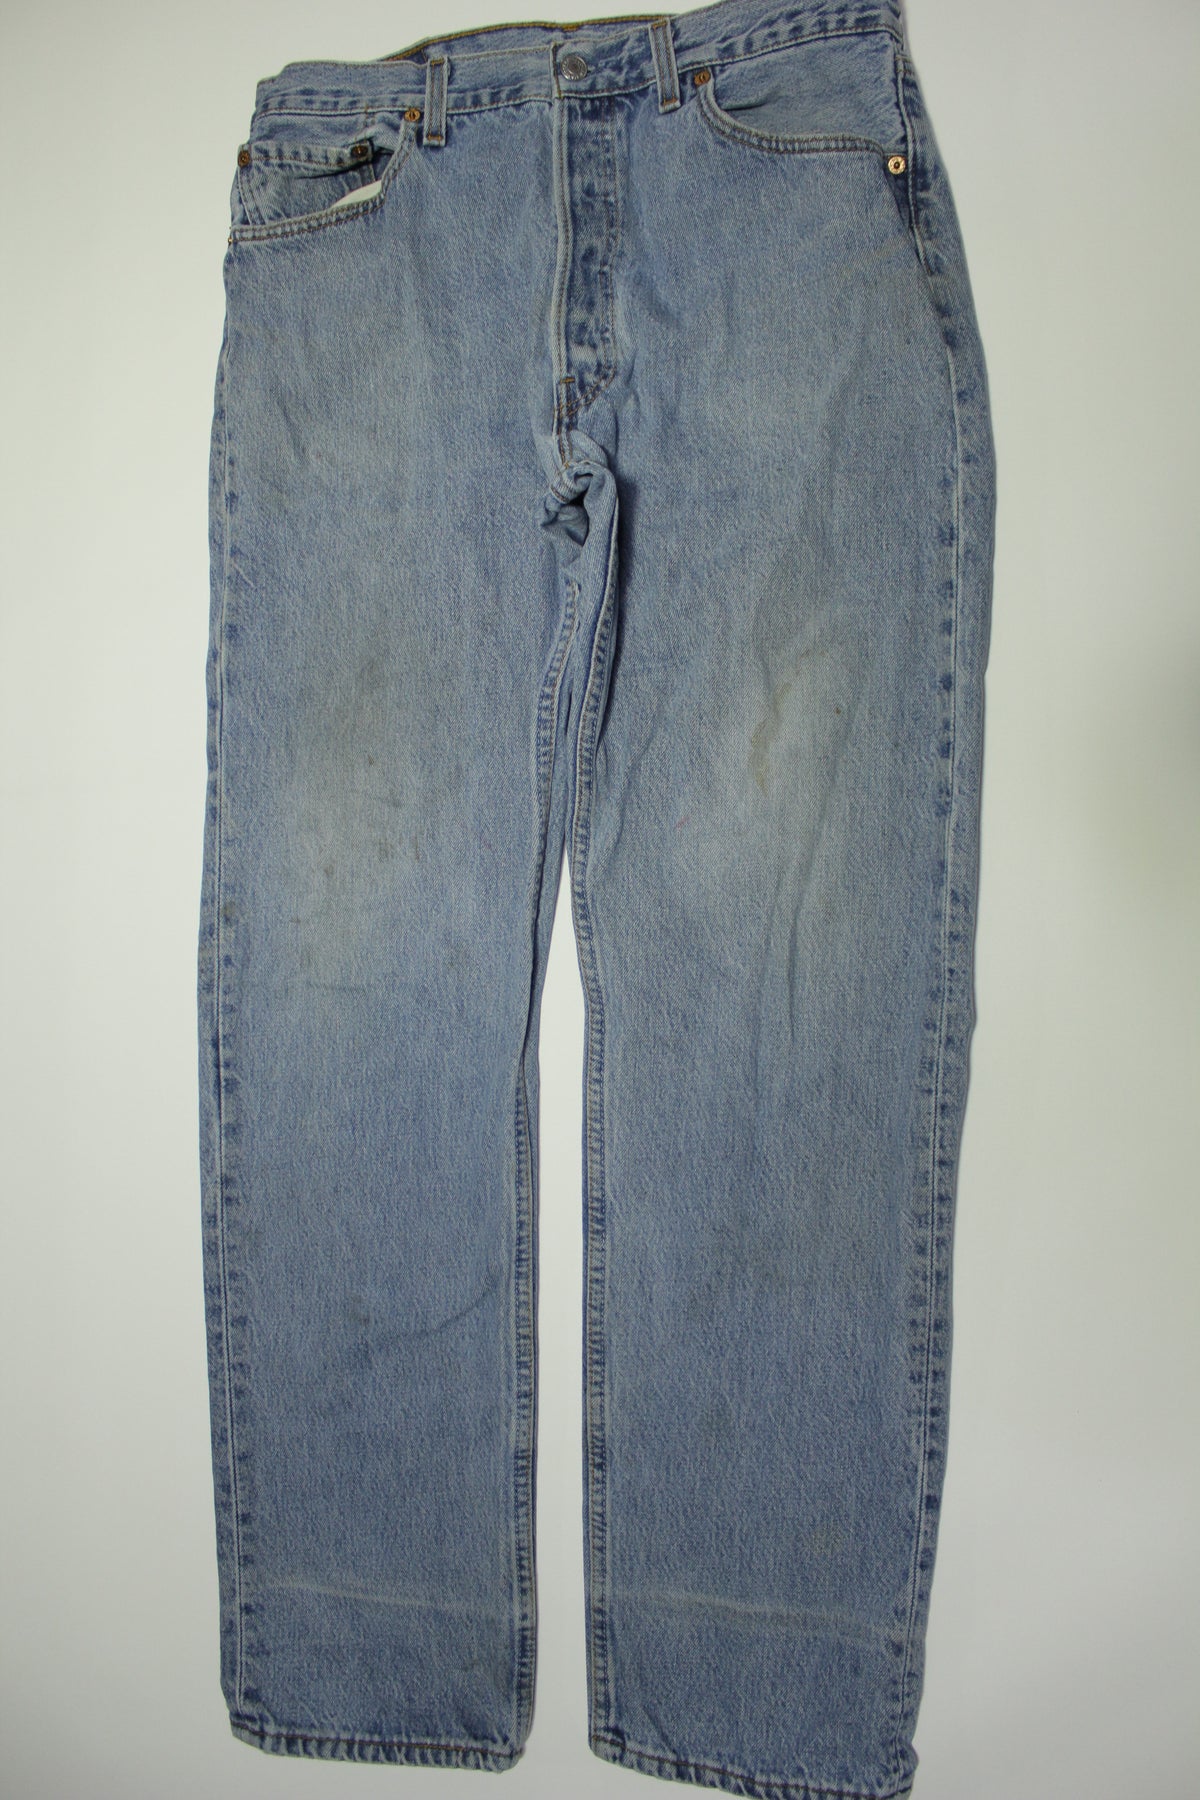 Shop for Vintage 90's Blue Men Jeans